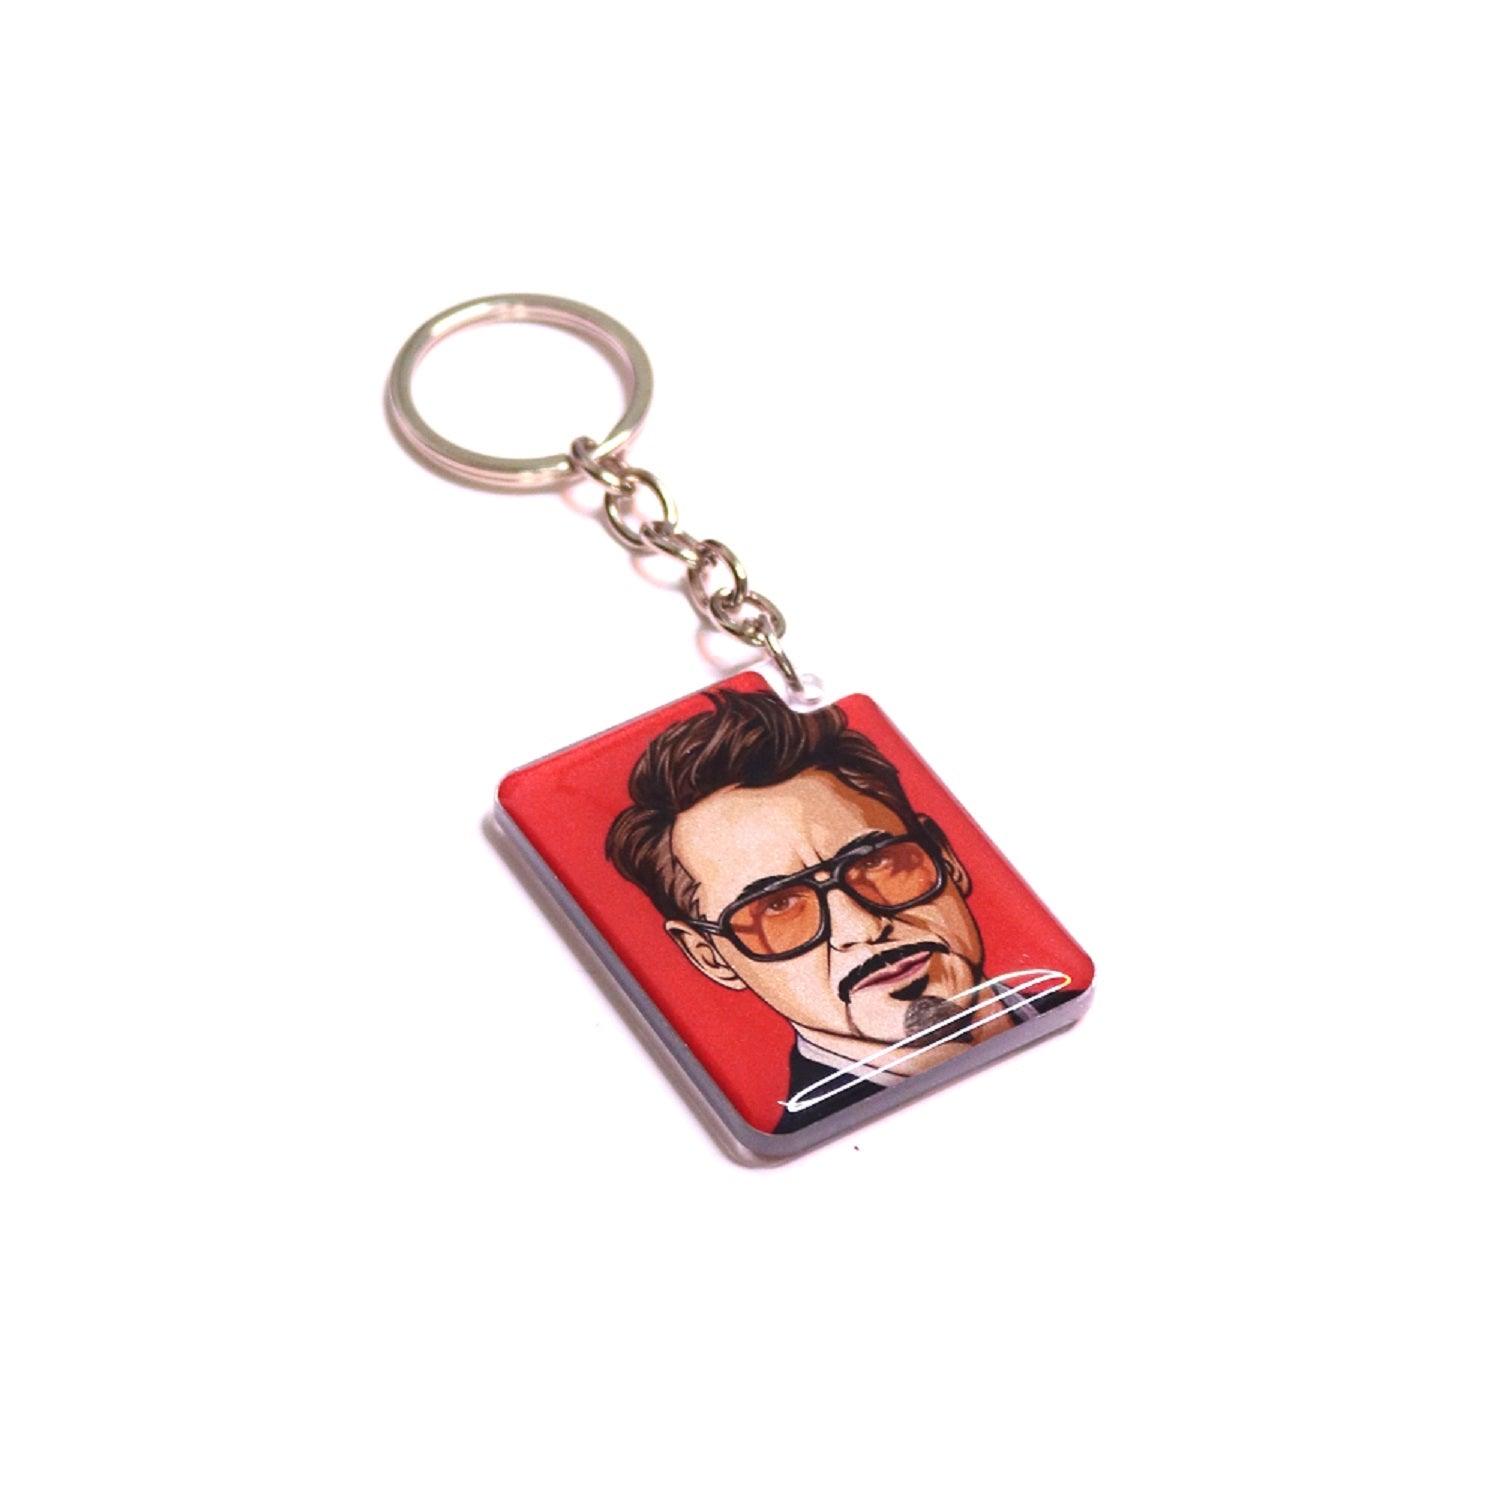 Tony Stark Photo Printed Keychain - Orbiz Creativez